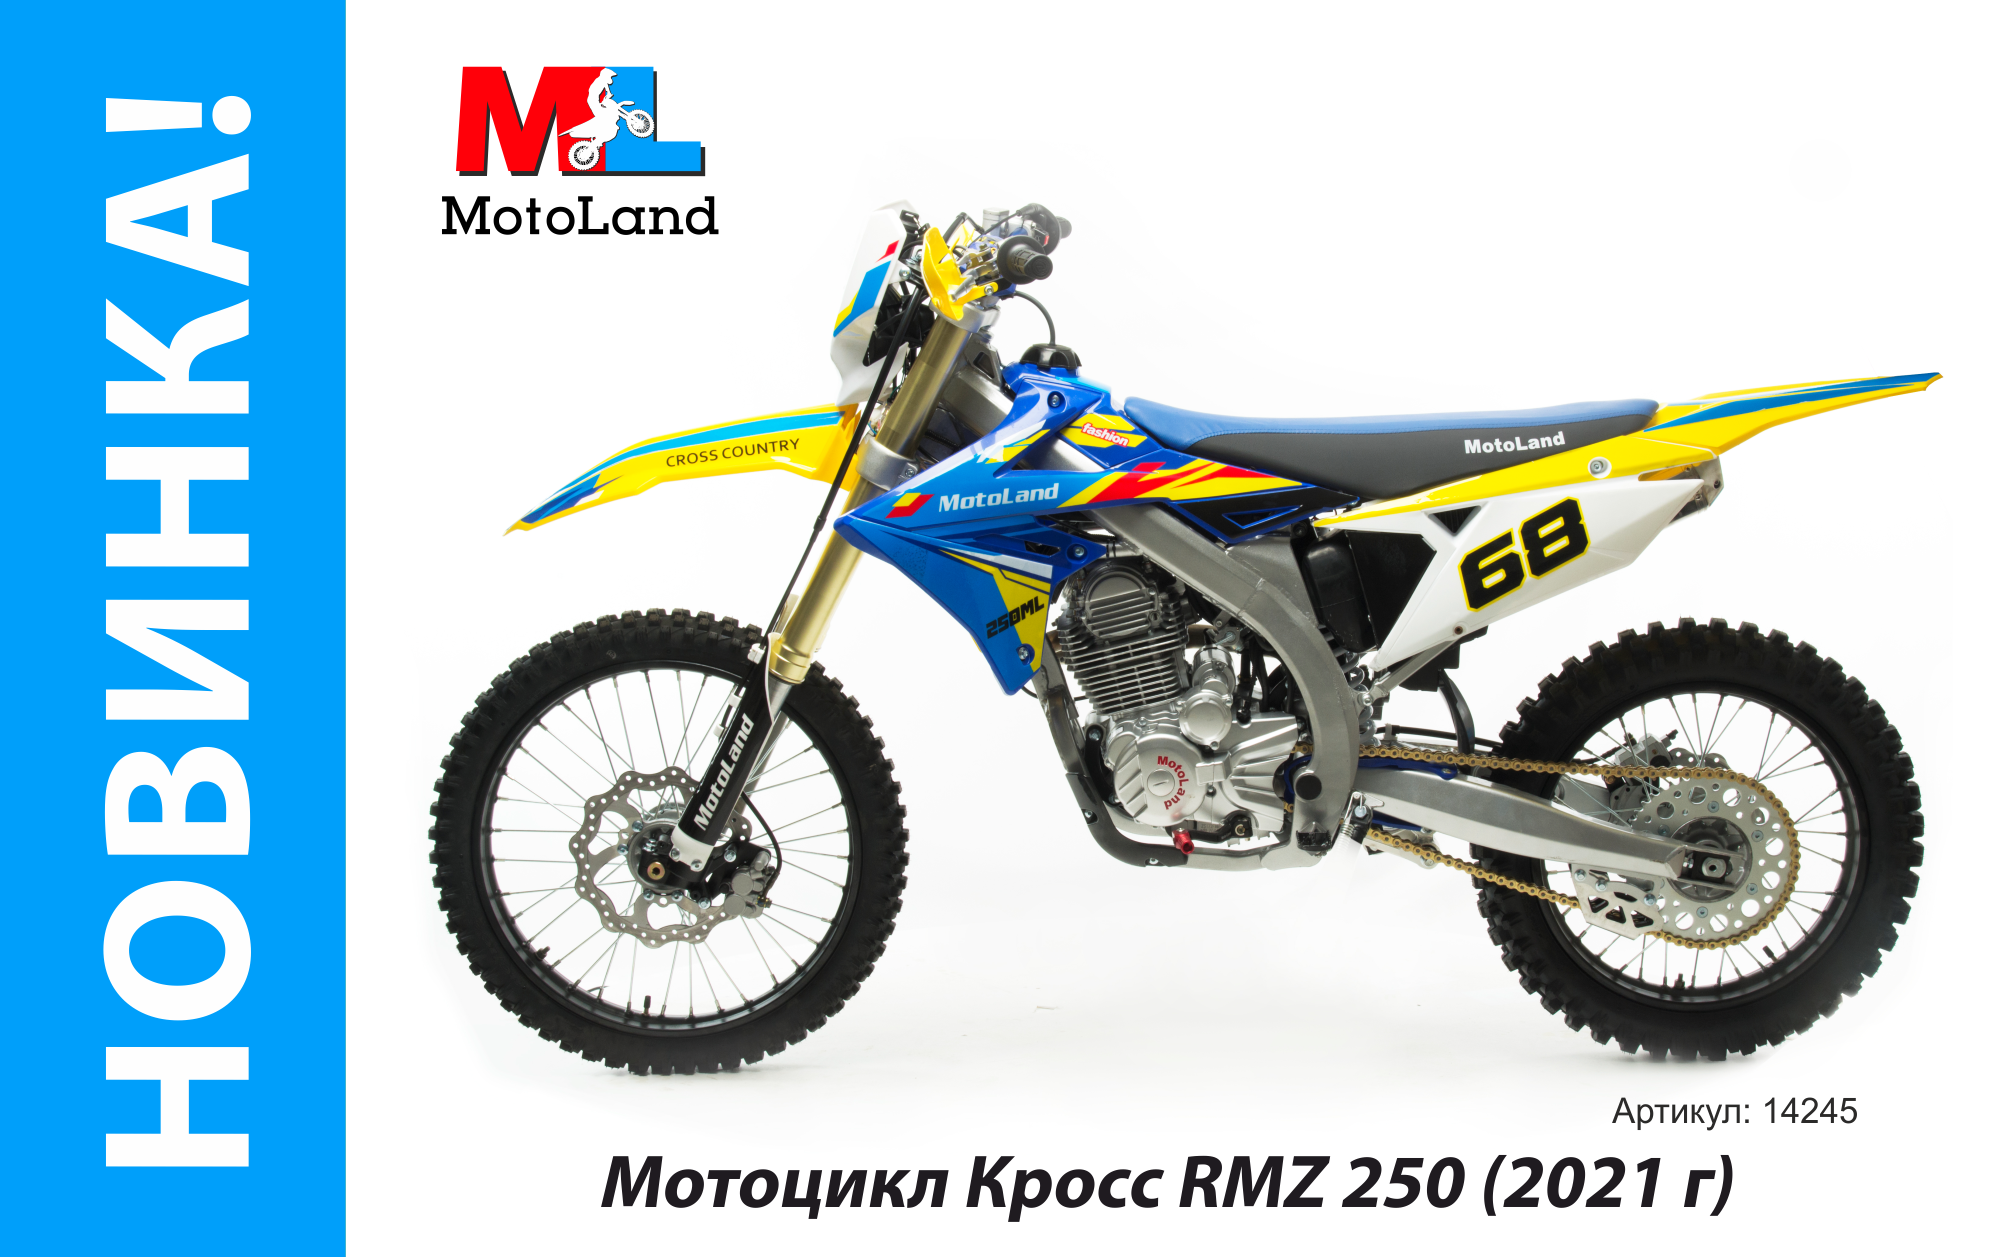 Motoland RMZ 250. Мотолэнд RMZ 250. Motoland RMZ 250 2021. Мотоцикл кросс Motoland RMZ 250 (172fmm).